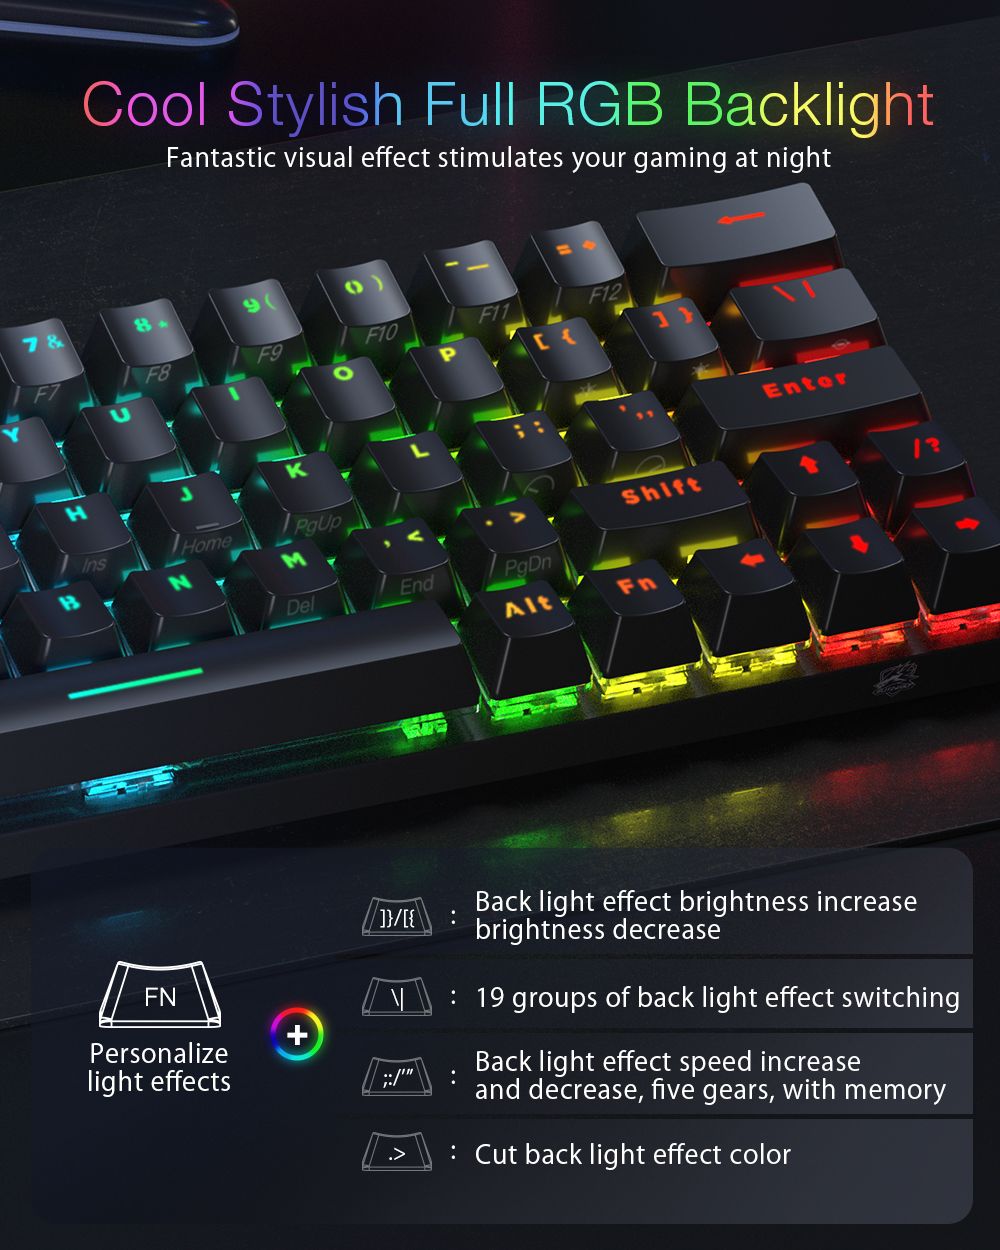 BlitzWolfreg-BW-KB1-63-Keys-Mechanical-Gaming-Keyboard-bluetooth-Wired-Keyboard-Gateron-Switch-RGB-N-1682979